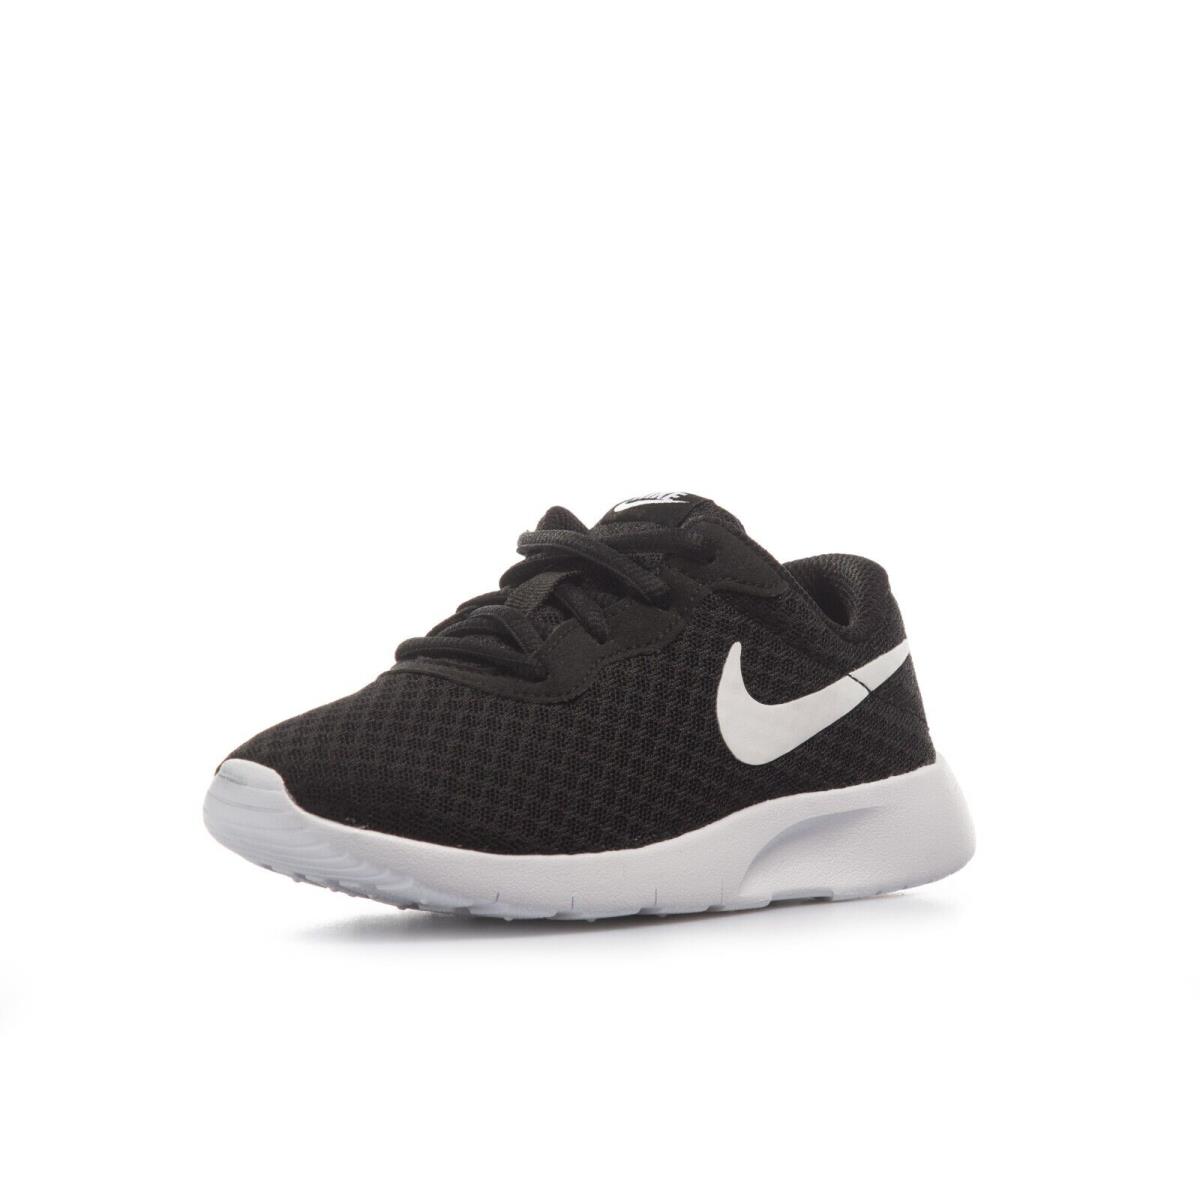 Nike Kids Tanjun PS Black/white Running Shoes Size 11C